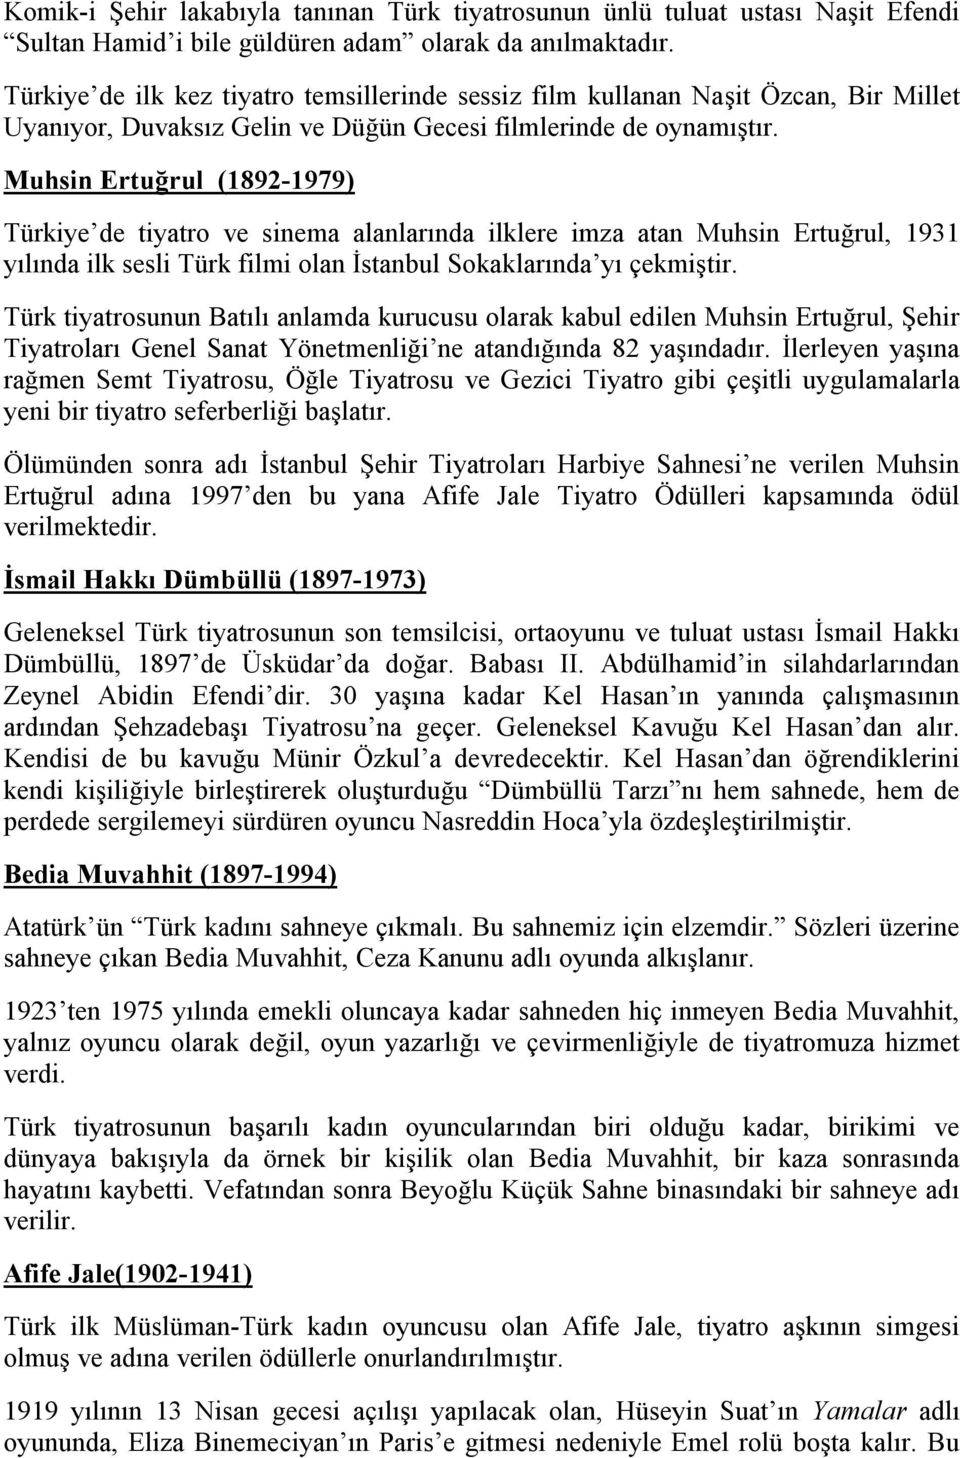 Muhsin Ertuğrul (1892-1979) Türkiye de tiyatro ve sinema alanlarında ilklere imza atan Muhsin Ertuğrul, 1931 yılında ilk sesli Türk filmi olan İstanbul Sokaklarında yı çekmiştir.